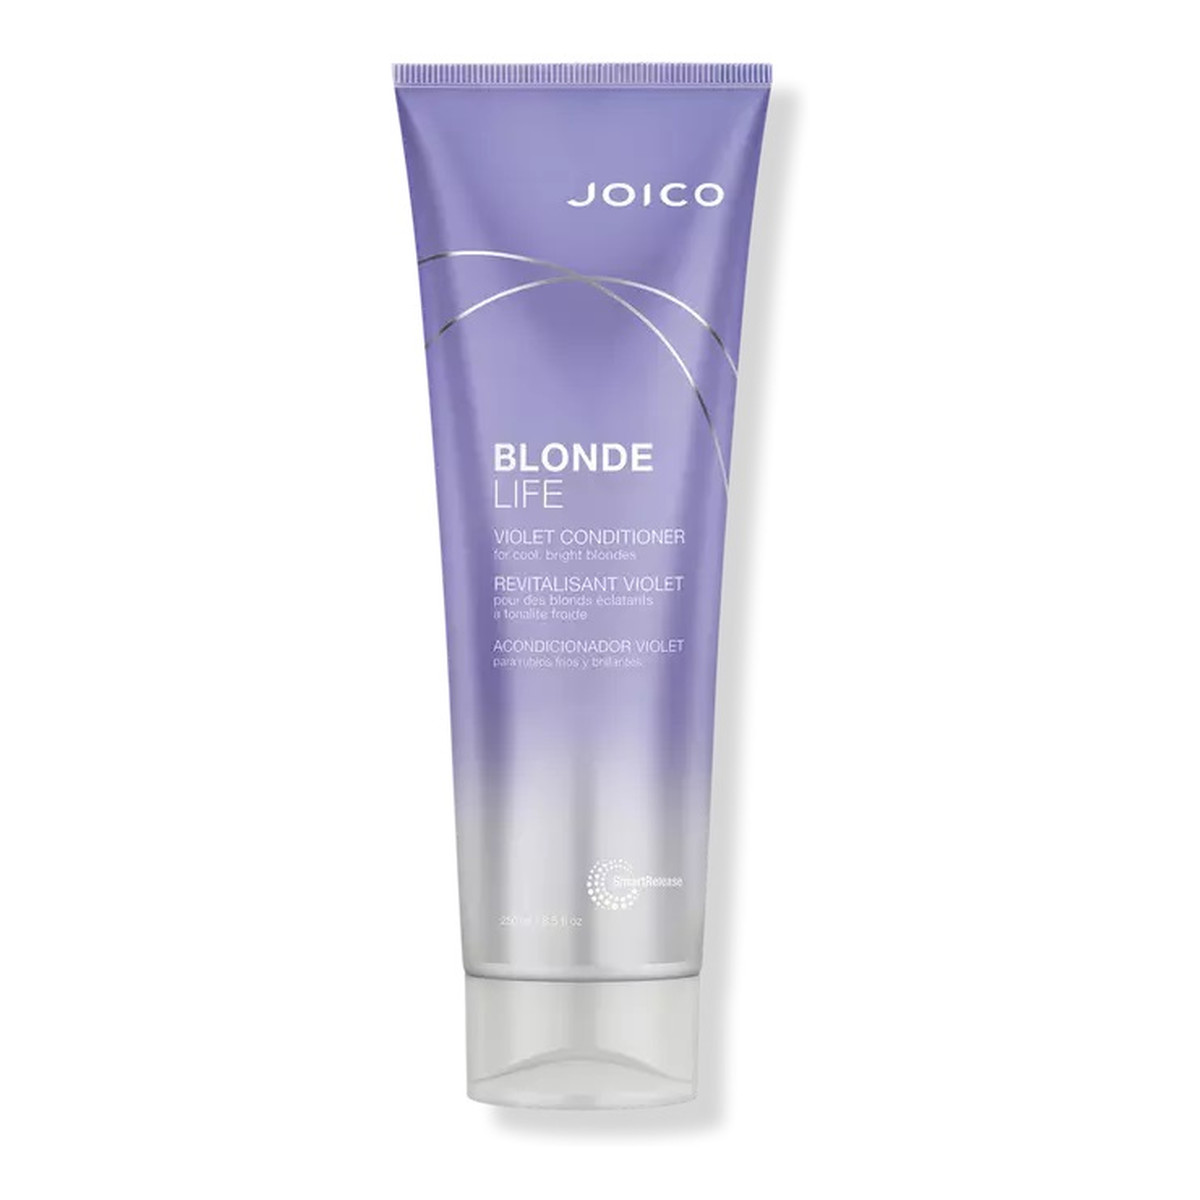 Joico Blonde life violet conditioner fioletowa odżywka do włosów blond 250ml